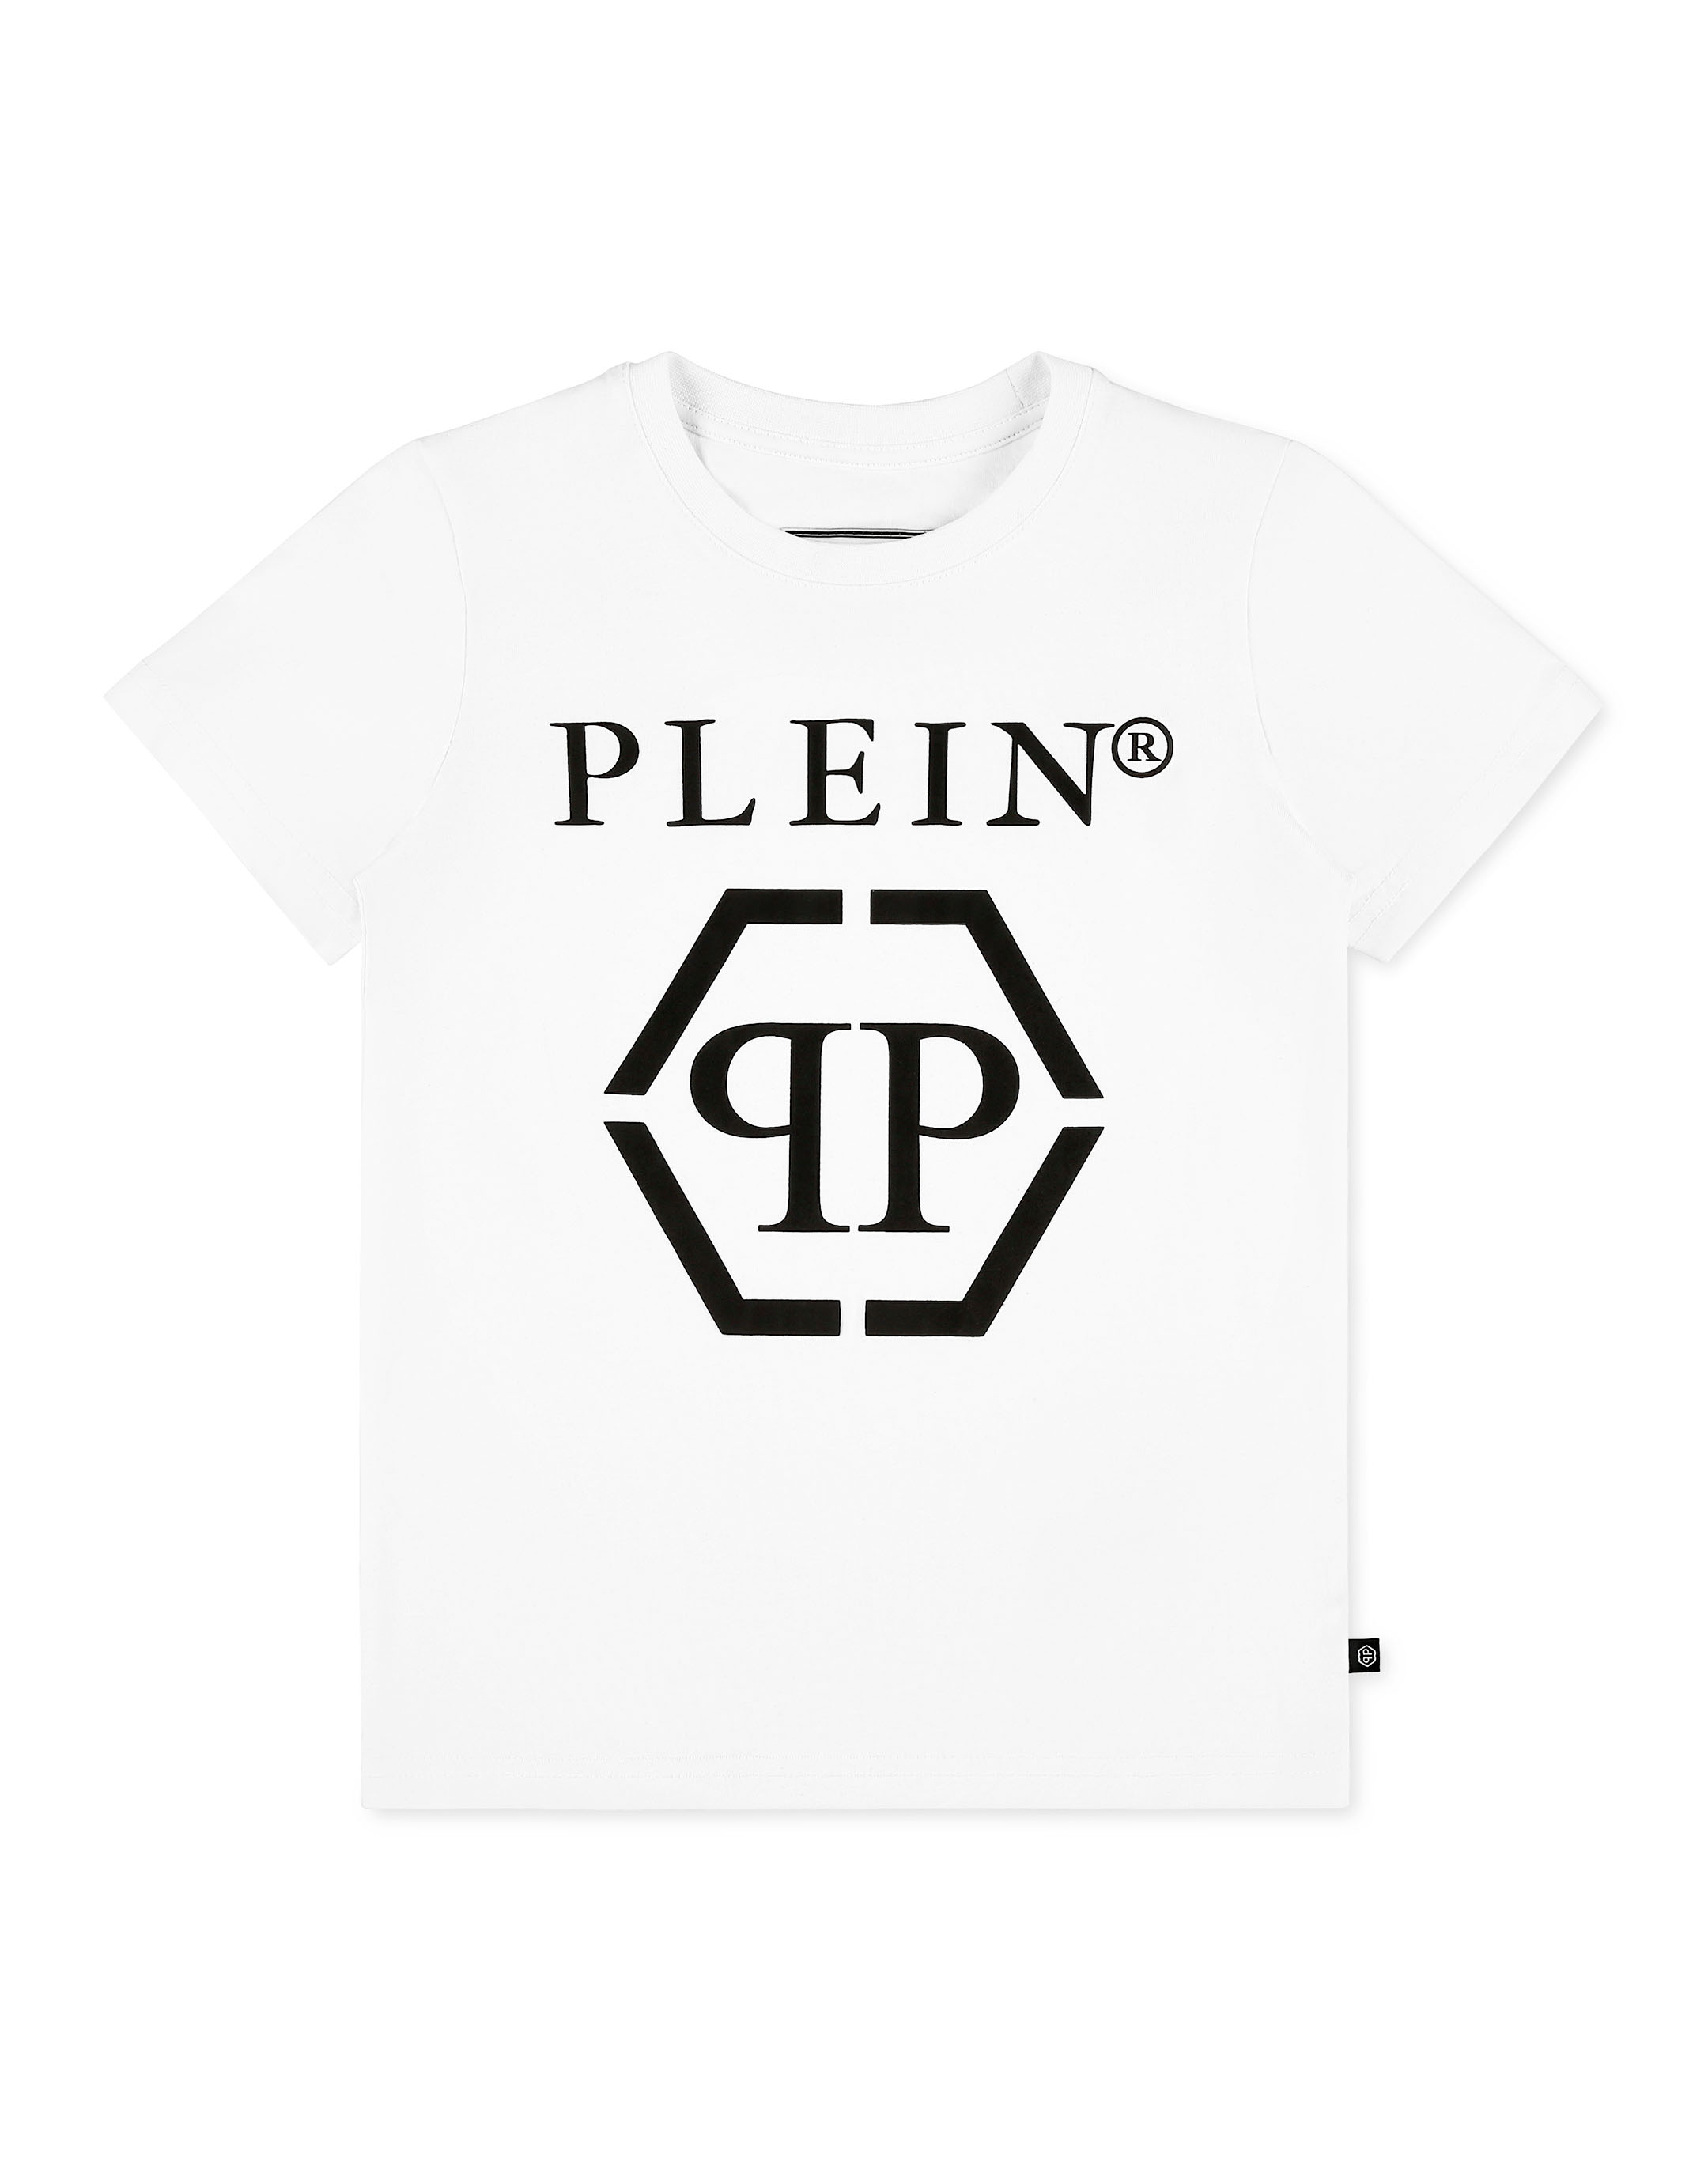 Philipp Plein White Logo Print T-Shirt for Men Online India at Darveys.com